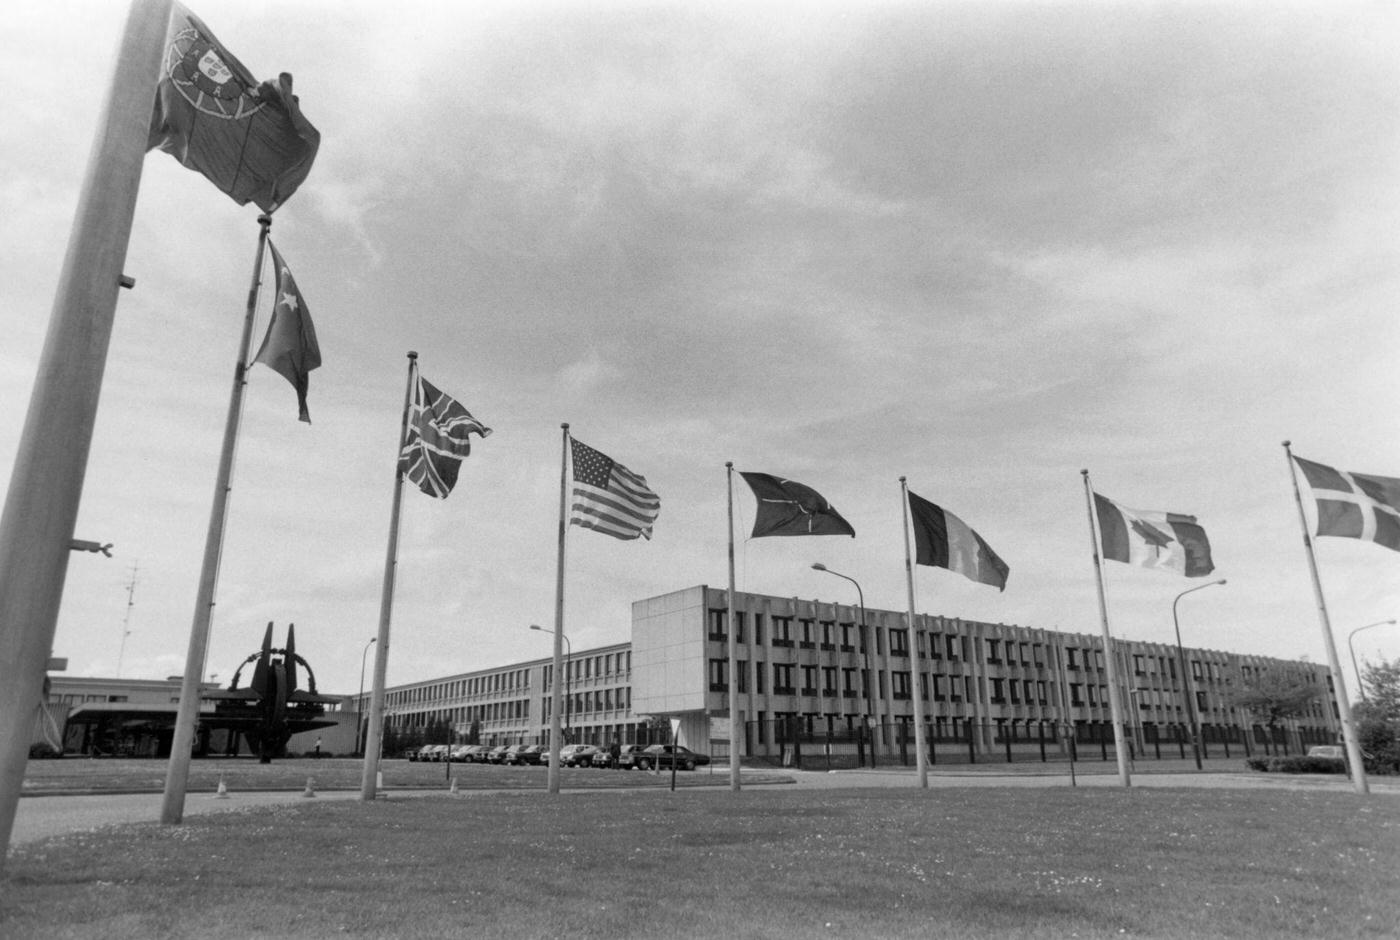 NATO Headquarters in Brussels, Belgium, 1981